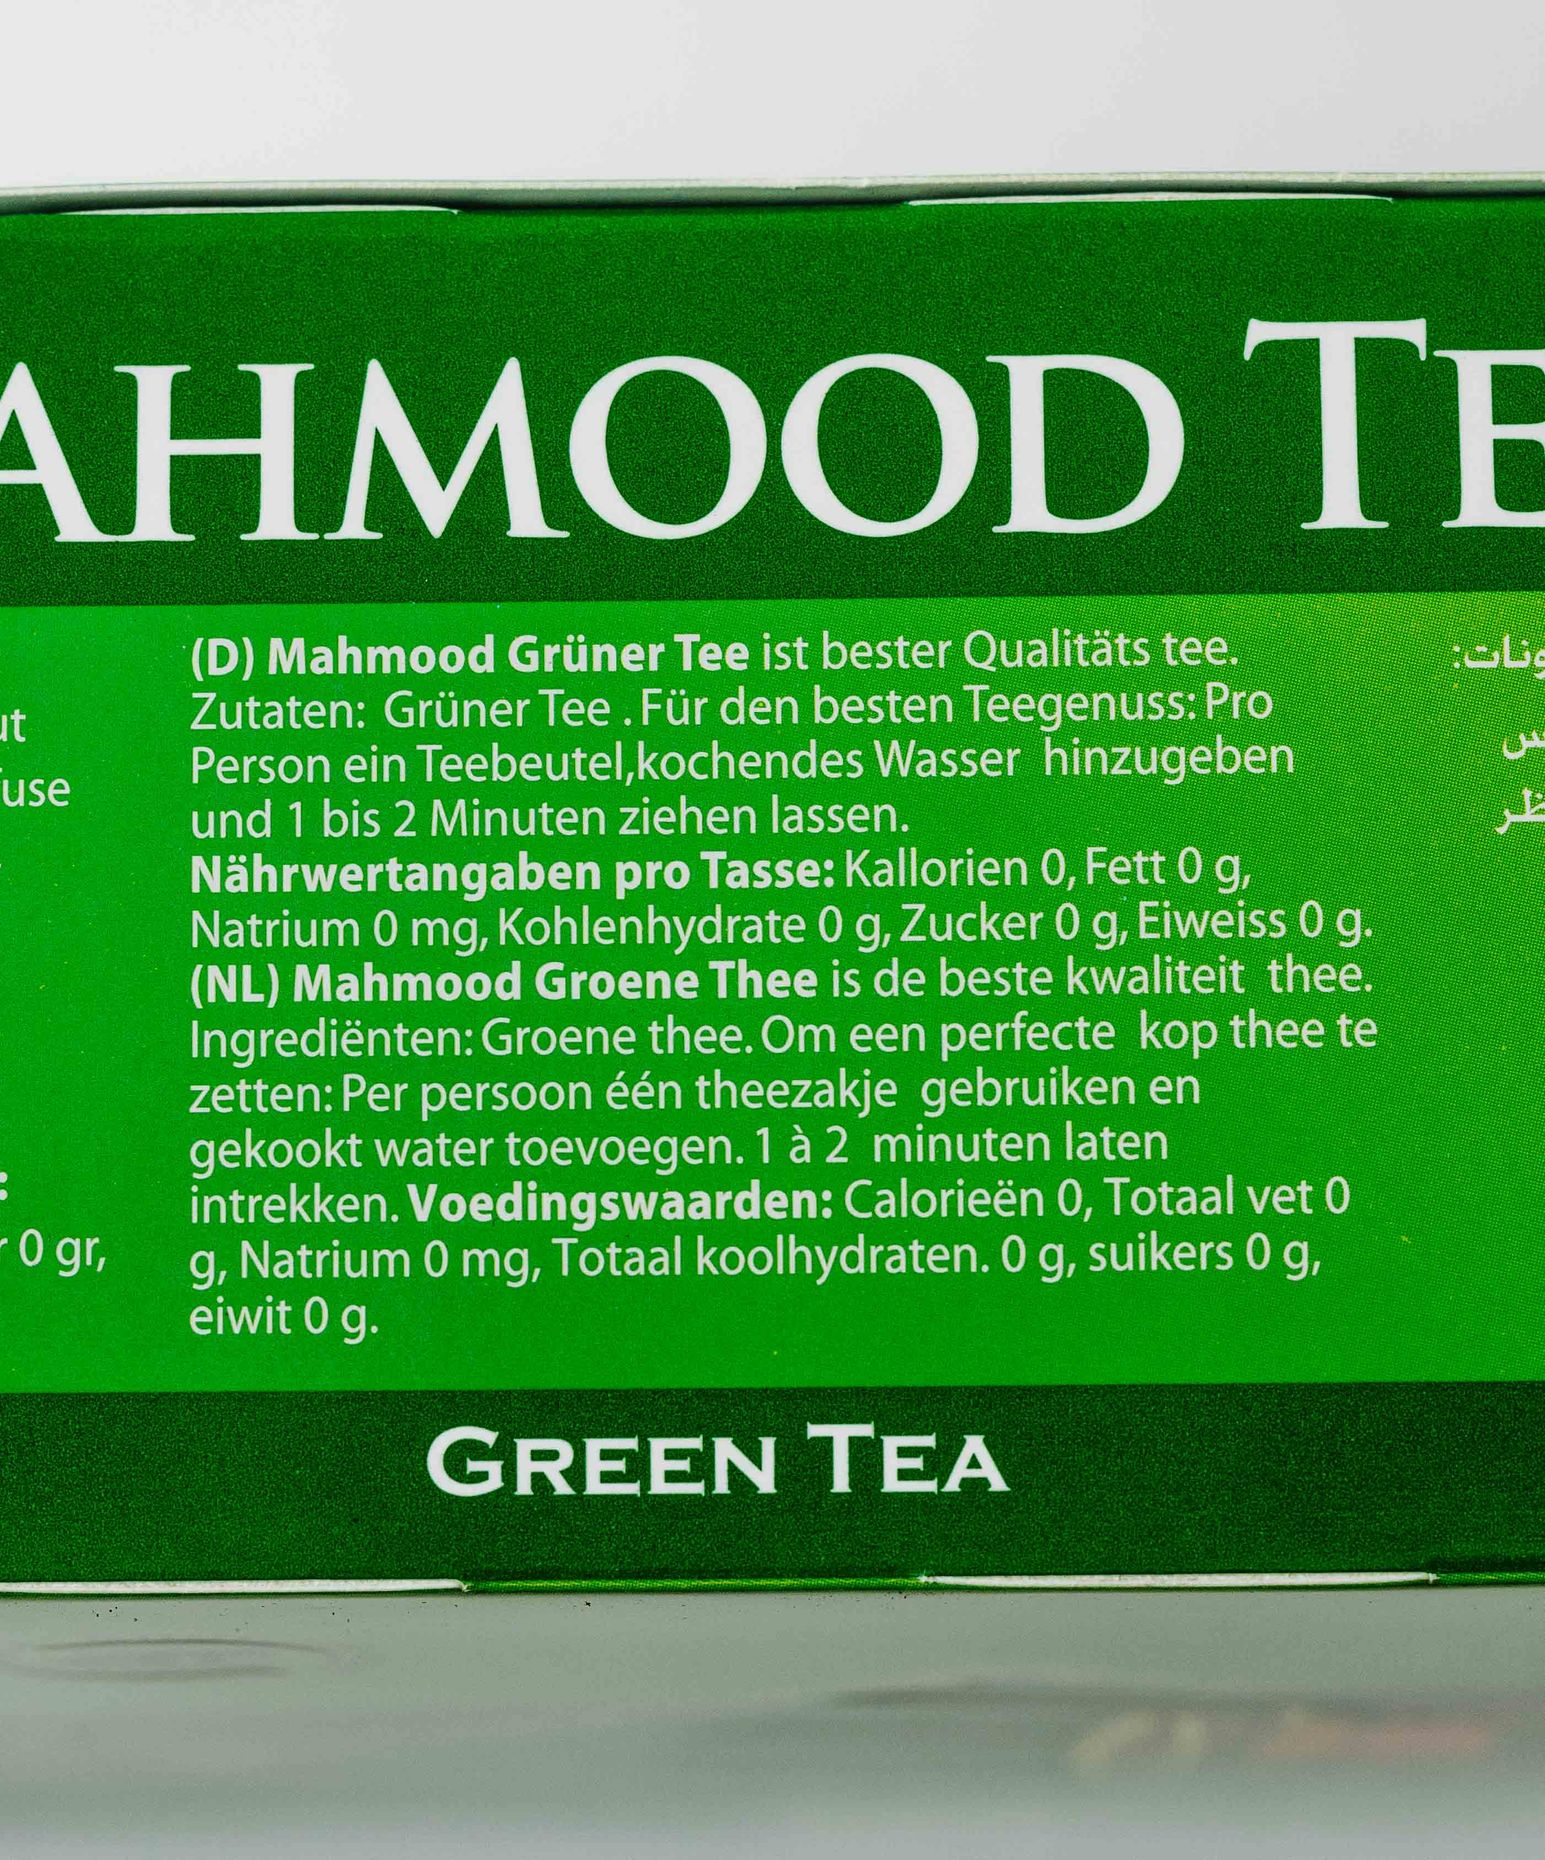 Mahmood Green Tea Bags